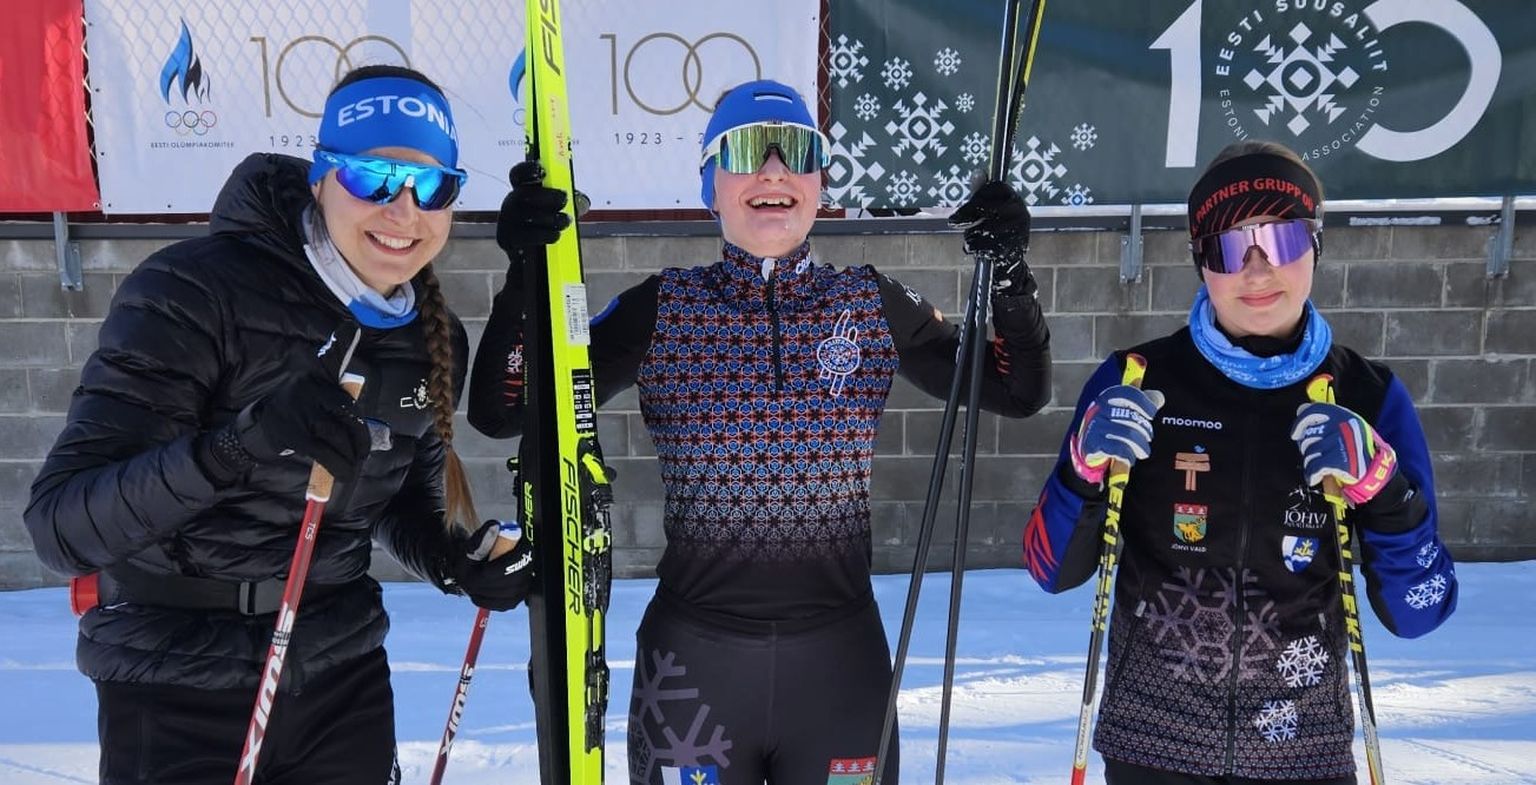 Завоевавшая серебро в эстафете на чемпионате Эстонии среди взрослых женская команда Алутагузеского лыжного клуба: Авели Уусталу, Херта Раяс и Анетте Аху.